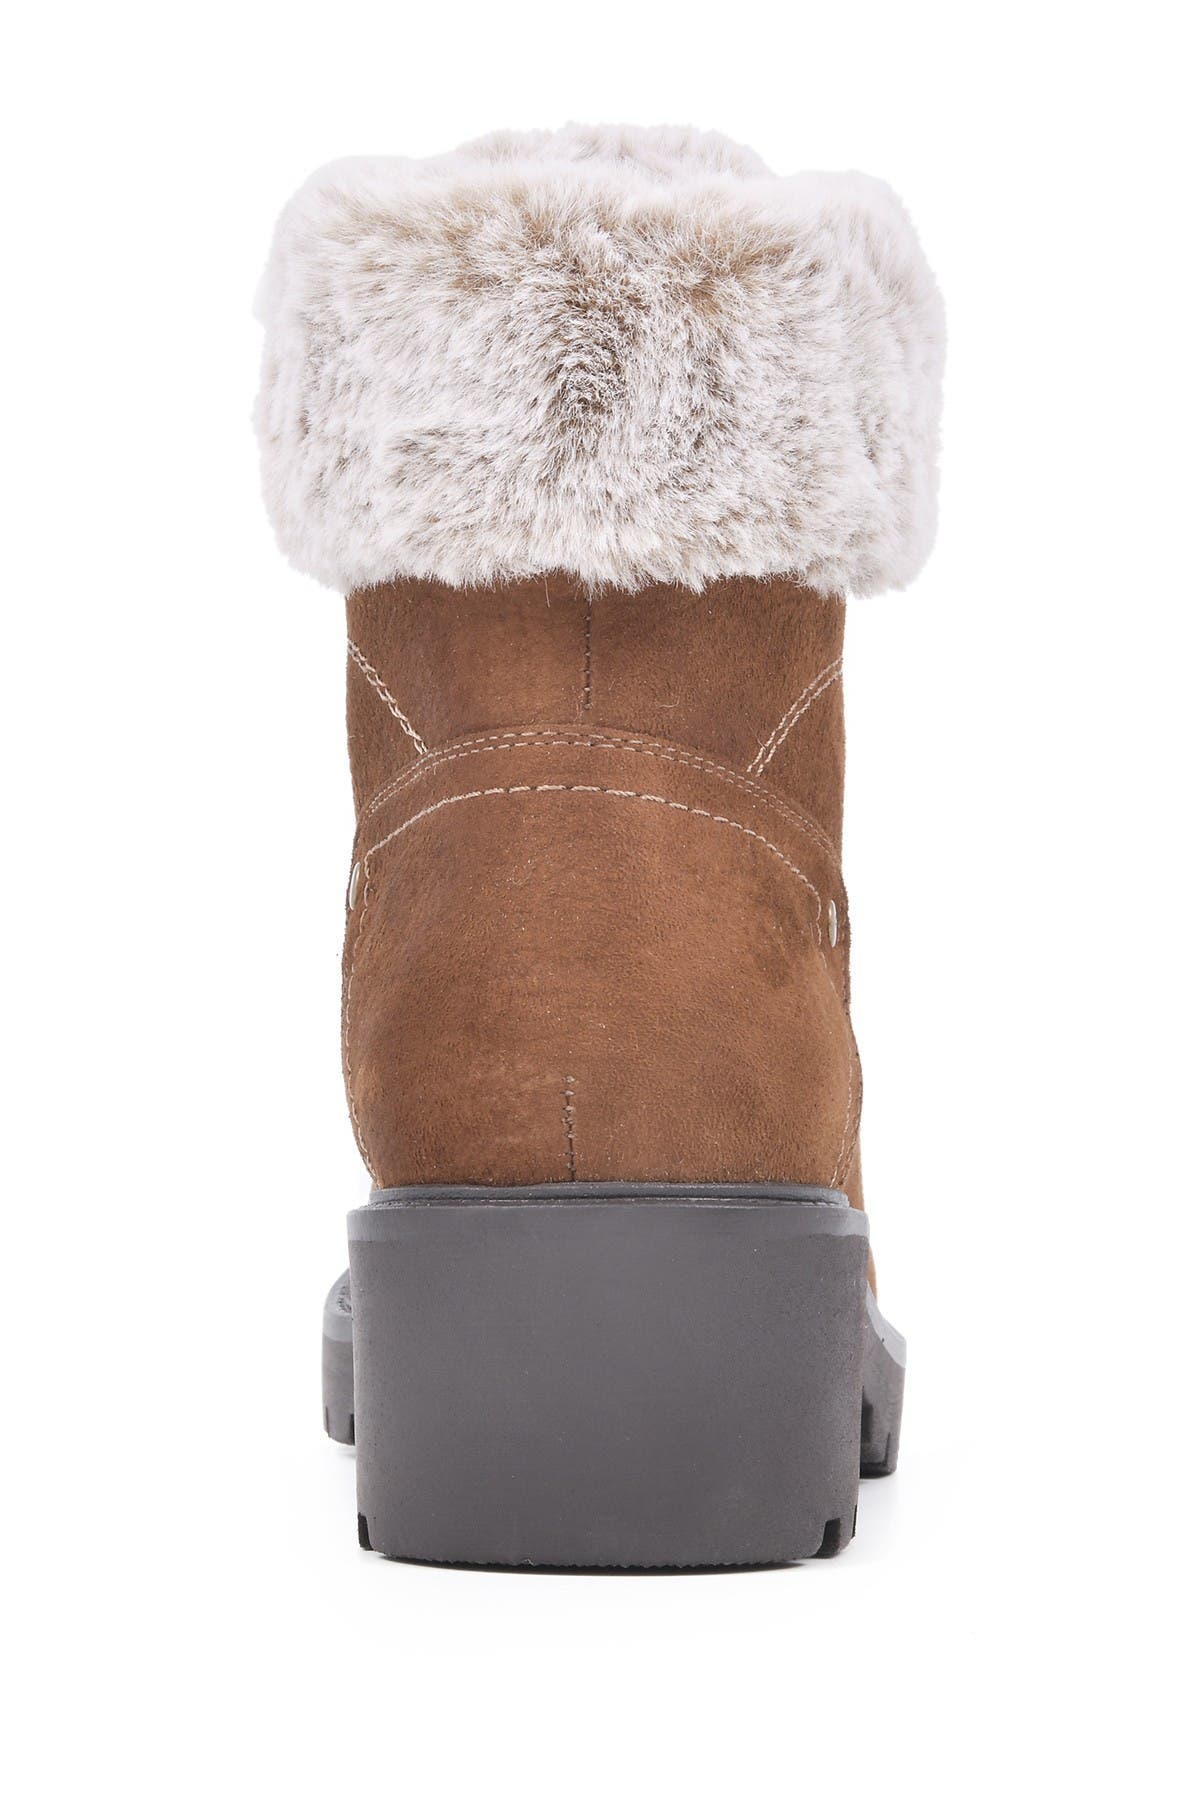 White Mountain Footwear Deserve Faux Fur Hiker Boot In Open Green29